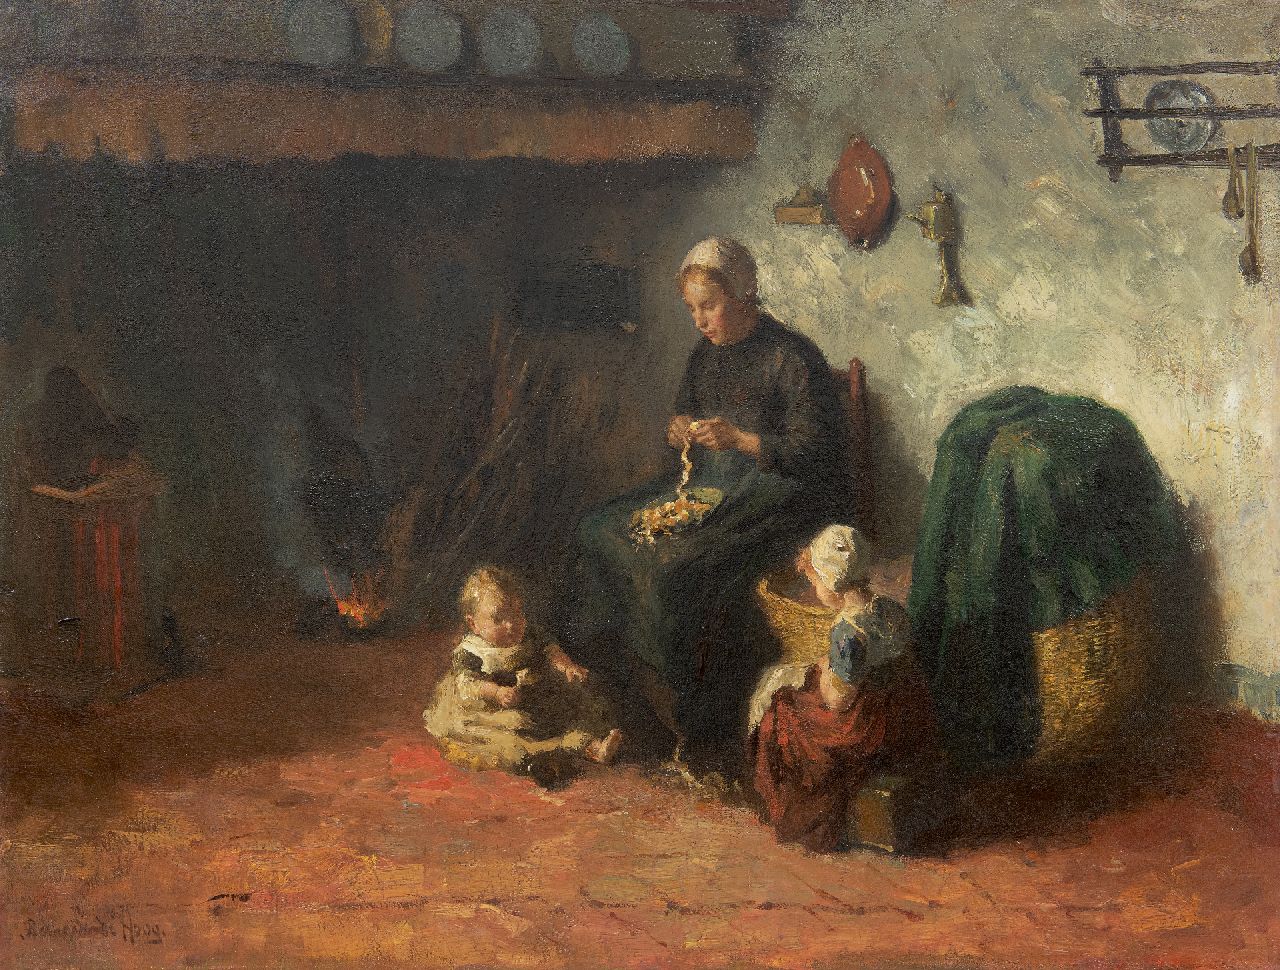 Hoog J.B. de | Johan 'Bernard' de Hoog | Schilderijen te koop aangeboden | Boereninterieur met jonge moeder en kinderen, olieverf op doek 50,0 x 65,5 cm, gesigneerd linksonder